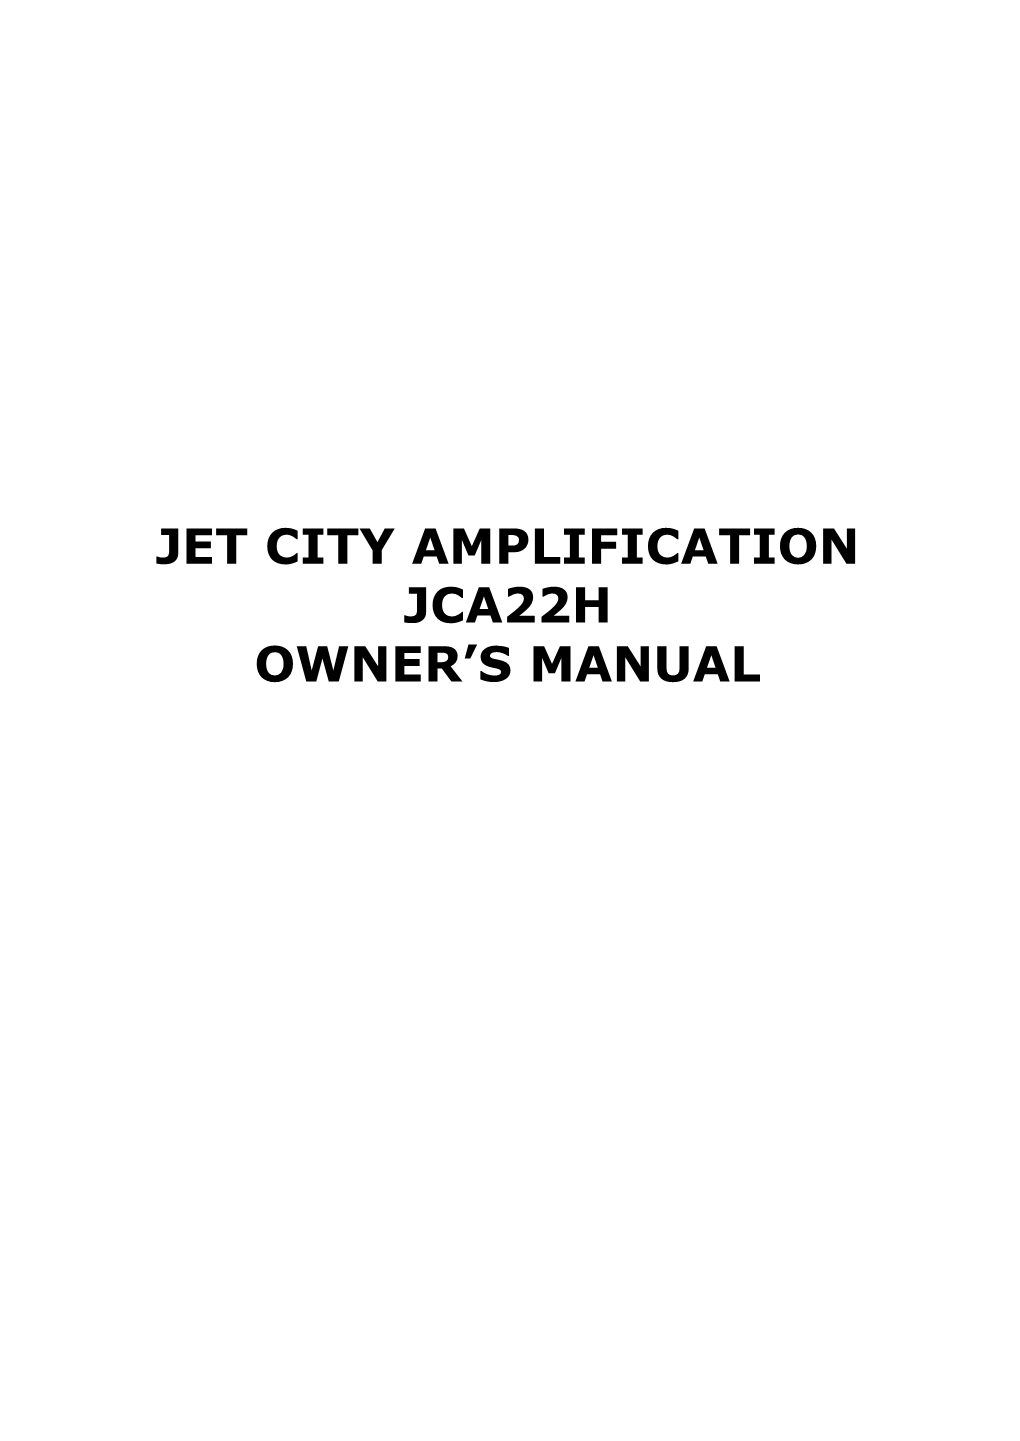 Jet City Amplification